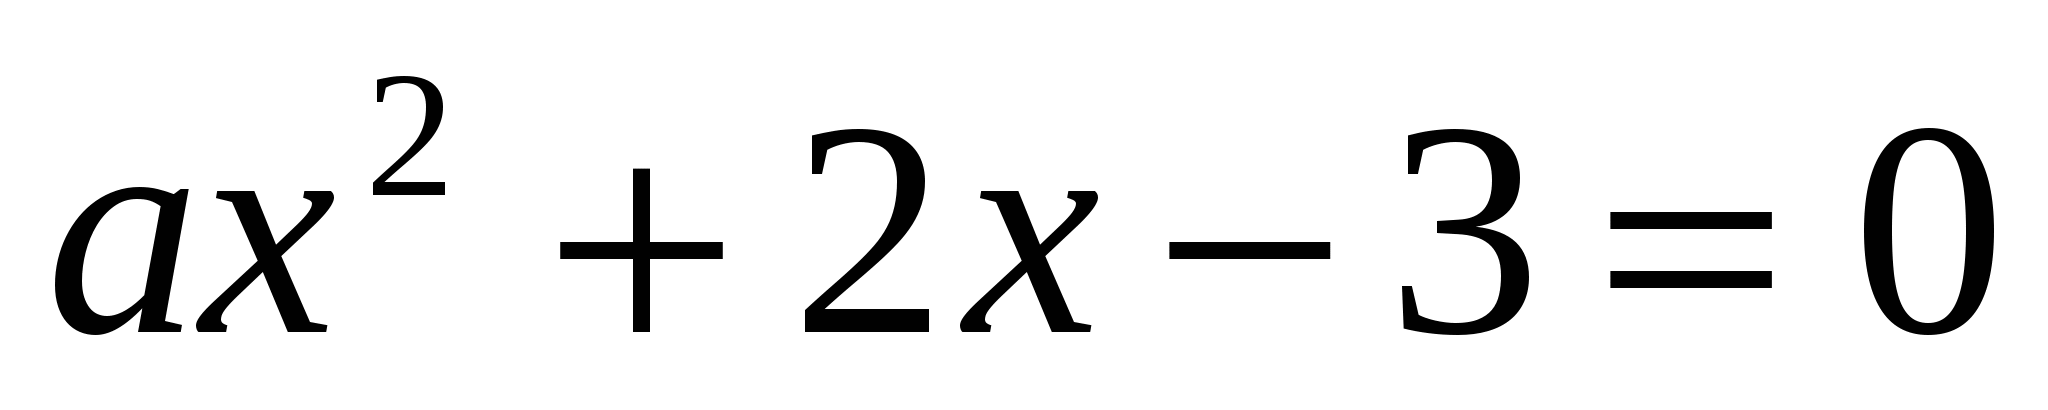 Тест по математике для 8 класса «Квадратные уравнения»